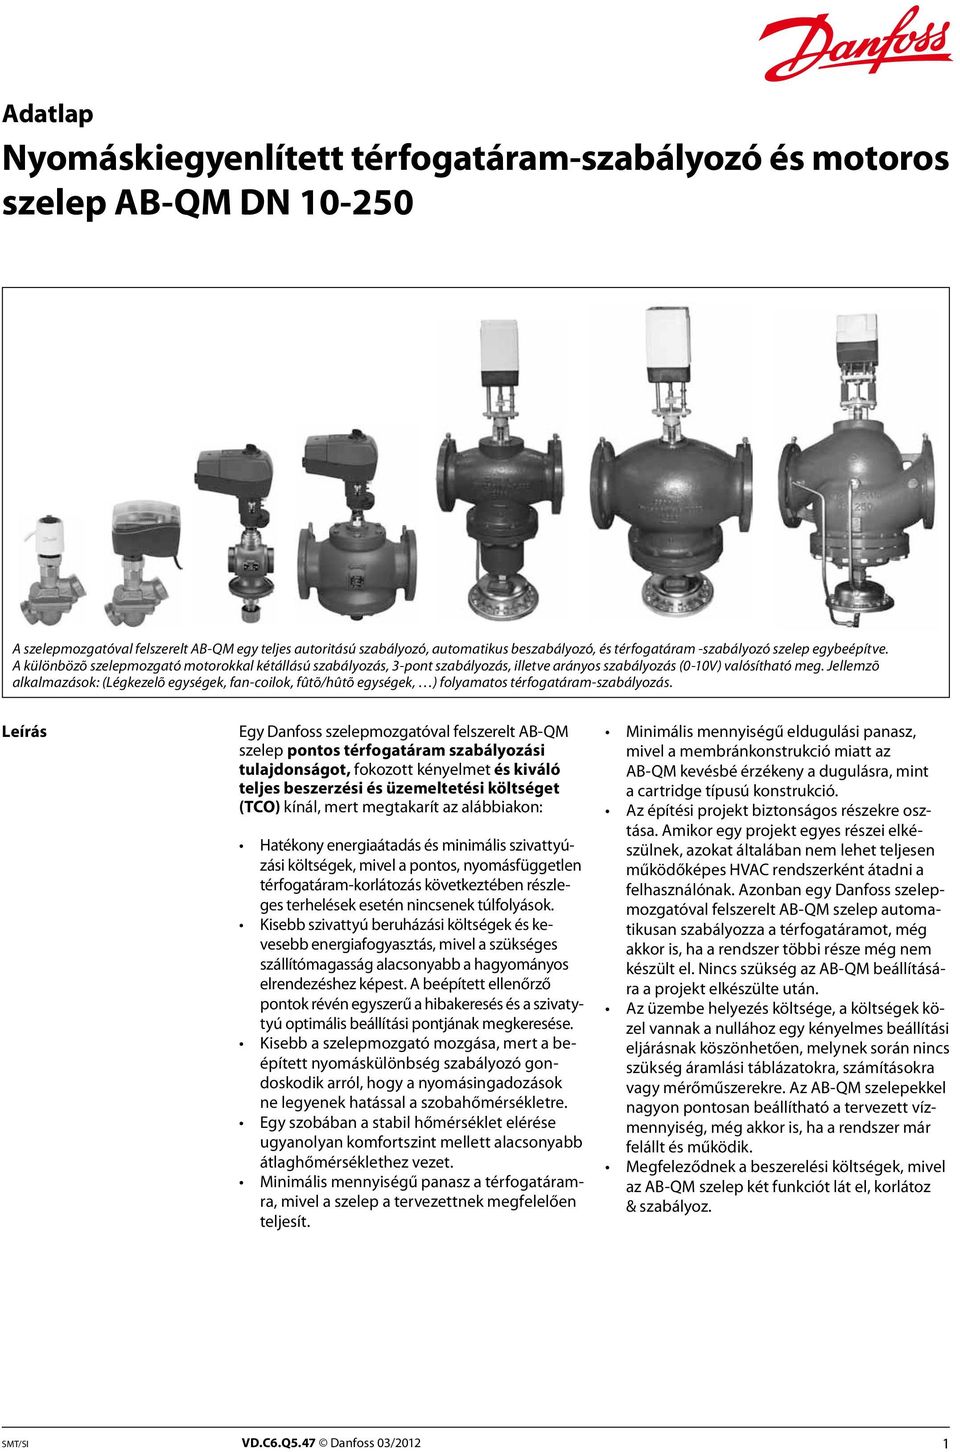 Nyomáskiegyenlített térfogatáram-szabályozó és motoros szelep AB-QM DN -  PDF Ingyenes letöltés